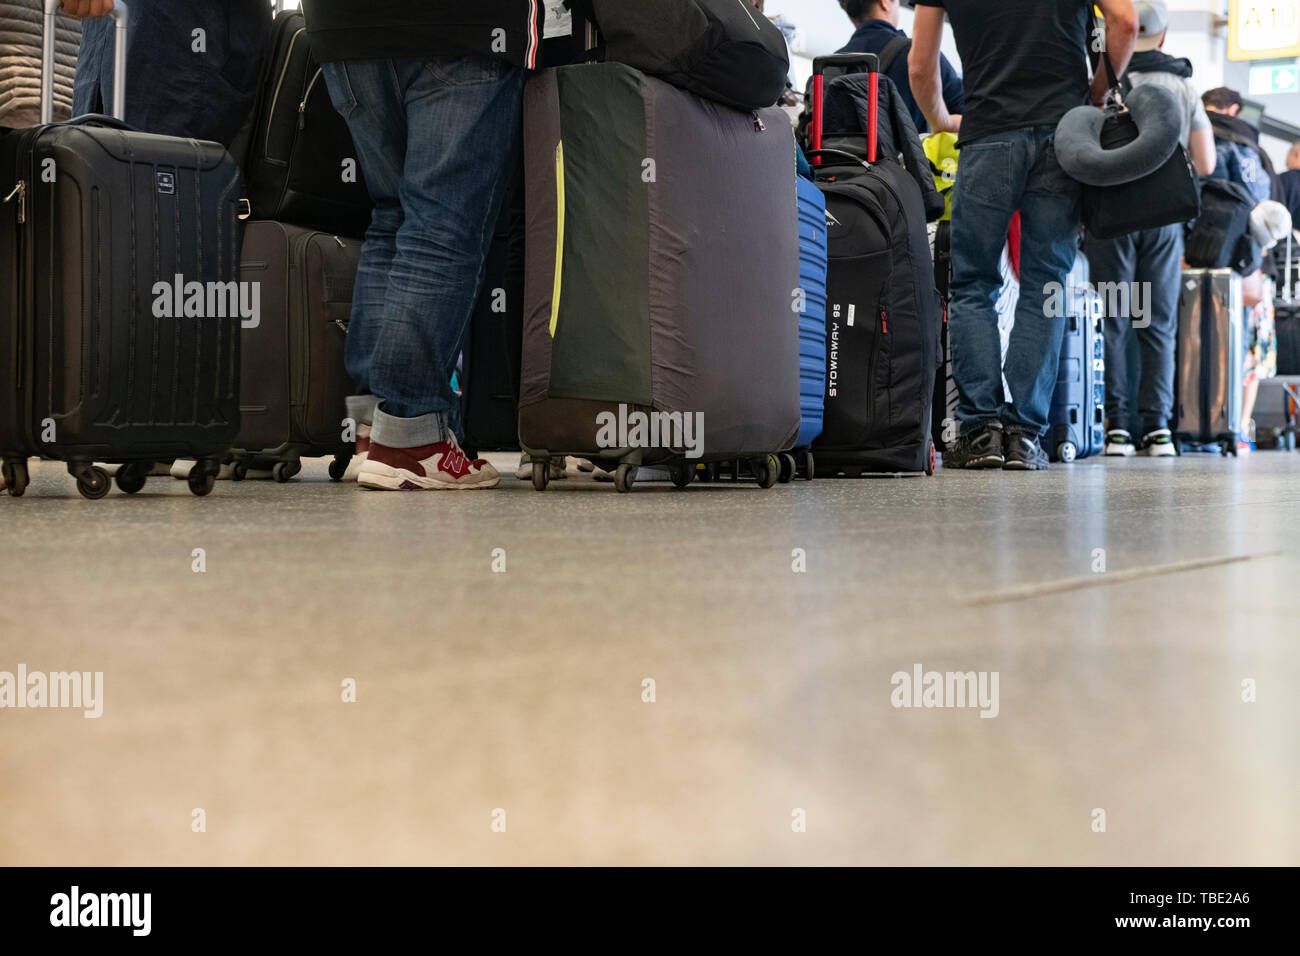 Berlín, Alemania. El 24 de mayo, 2019. Los viajeros llegan a una puerta en el aeropuerto de Tegel y esperar para el check-in. Crédito: Paul Zinken/dpa/Alamy Live News Foto de stock